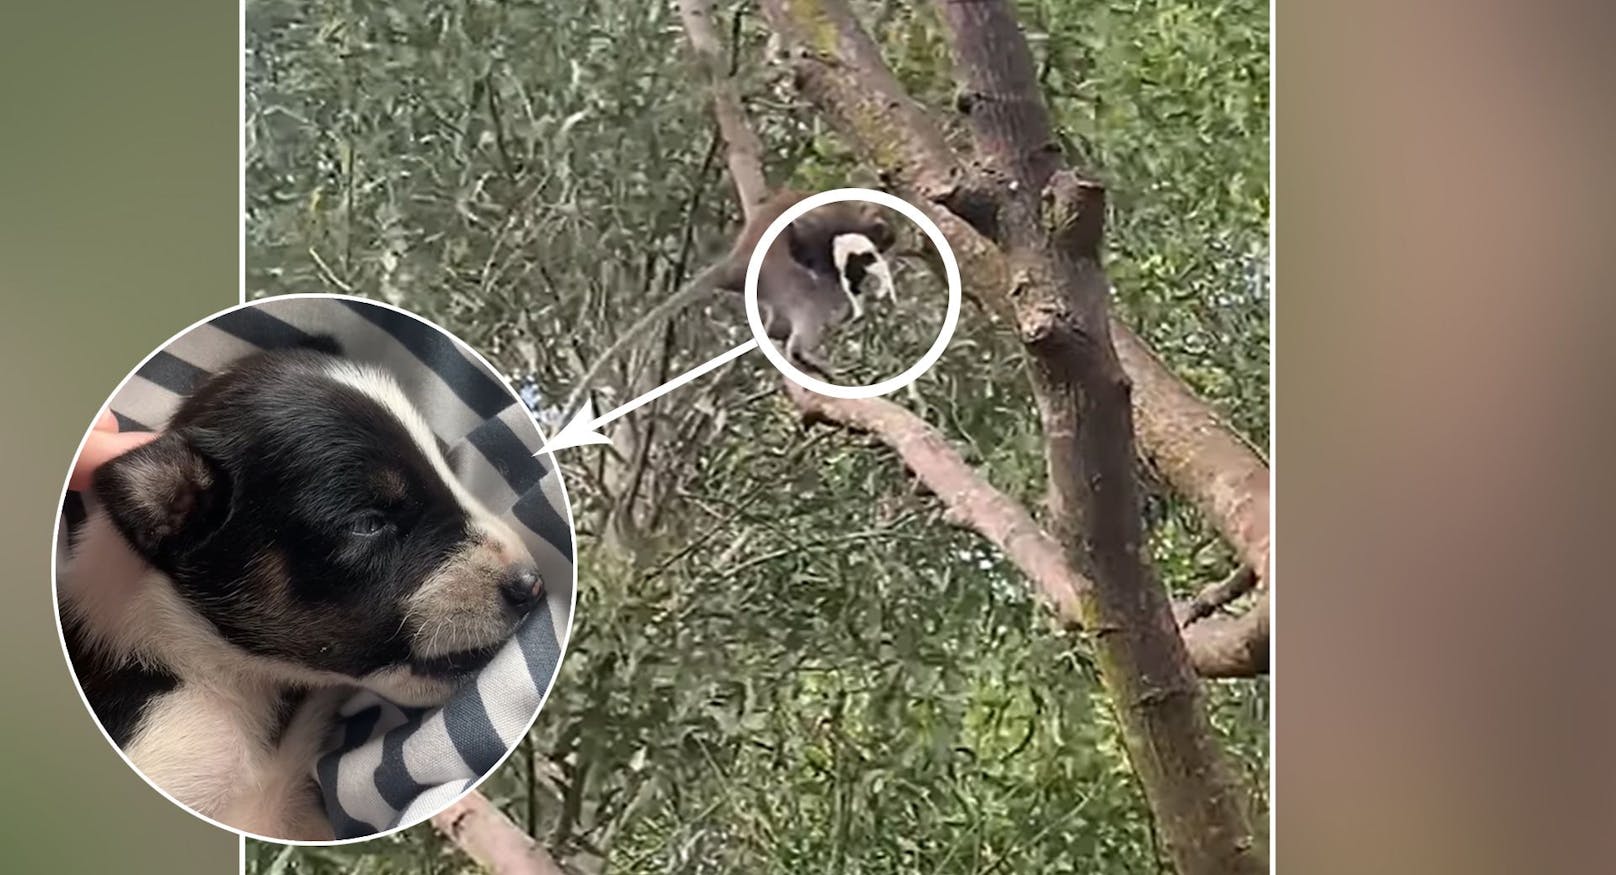 Verschleppt! Affe entführt winziges Hundebaby